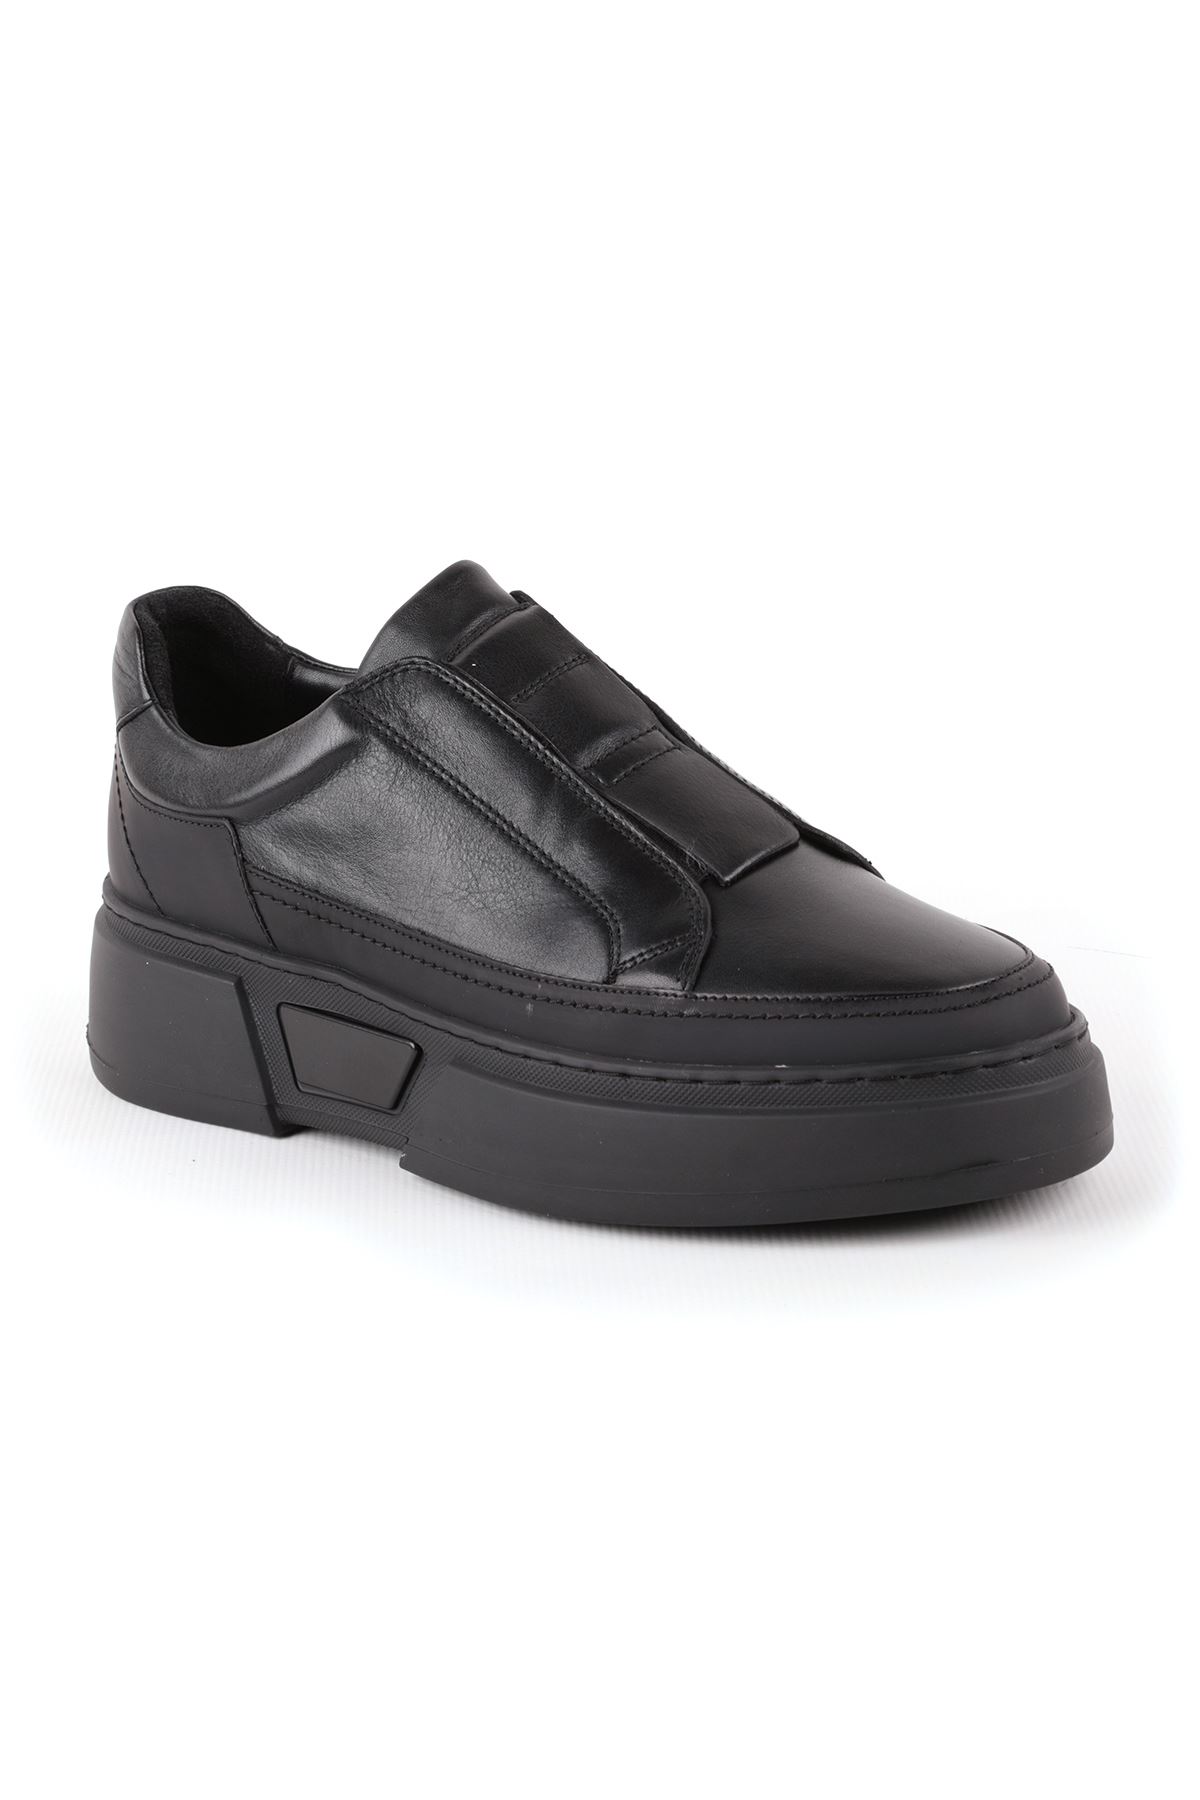 Libero L4995 Siyah Casual Erkek Ayakkabı 